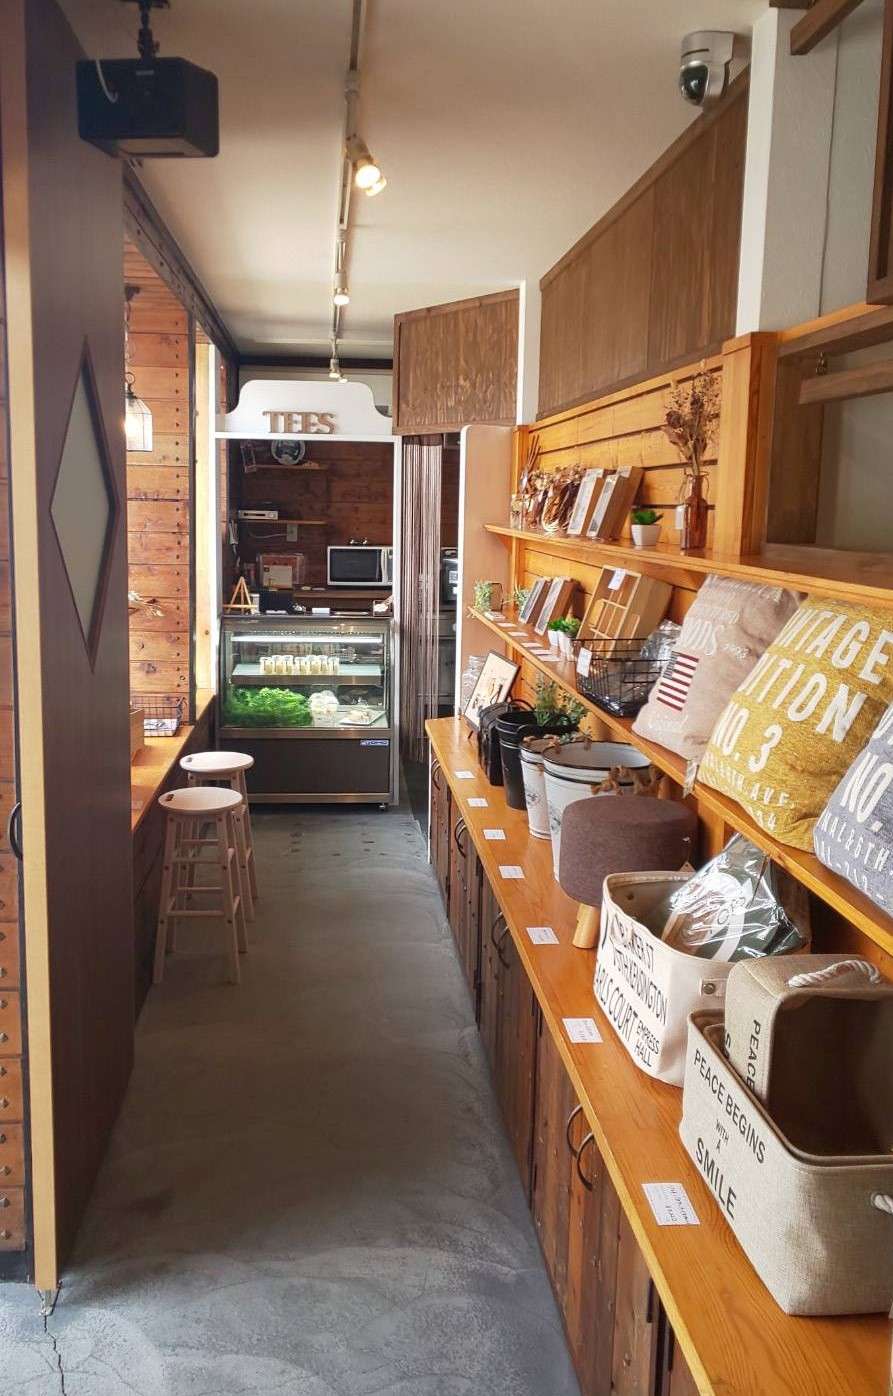 佐賀県佐賀市のカフェ・ランチ【TEES CAFE】<span>居心地の良い店内と素敵な接客のカフェ</span>